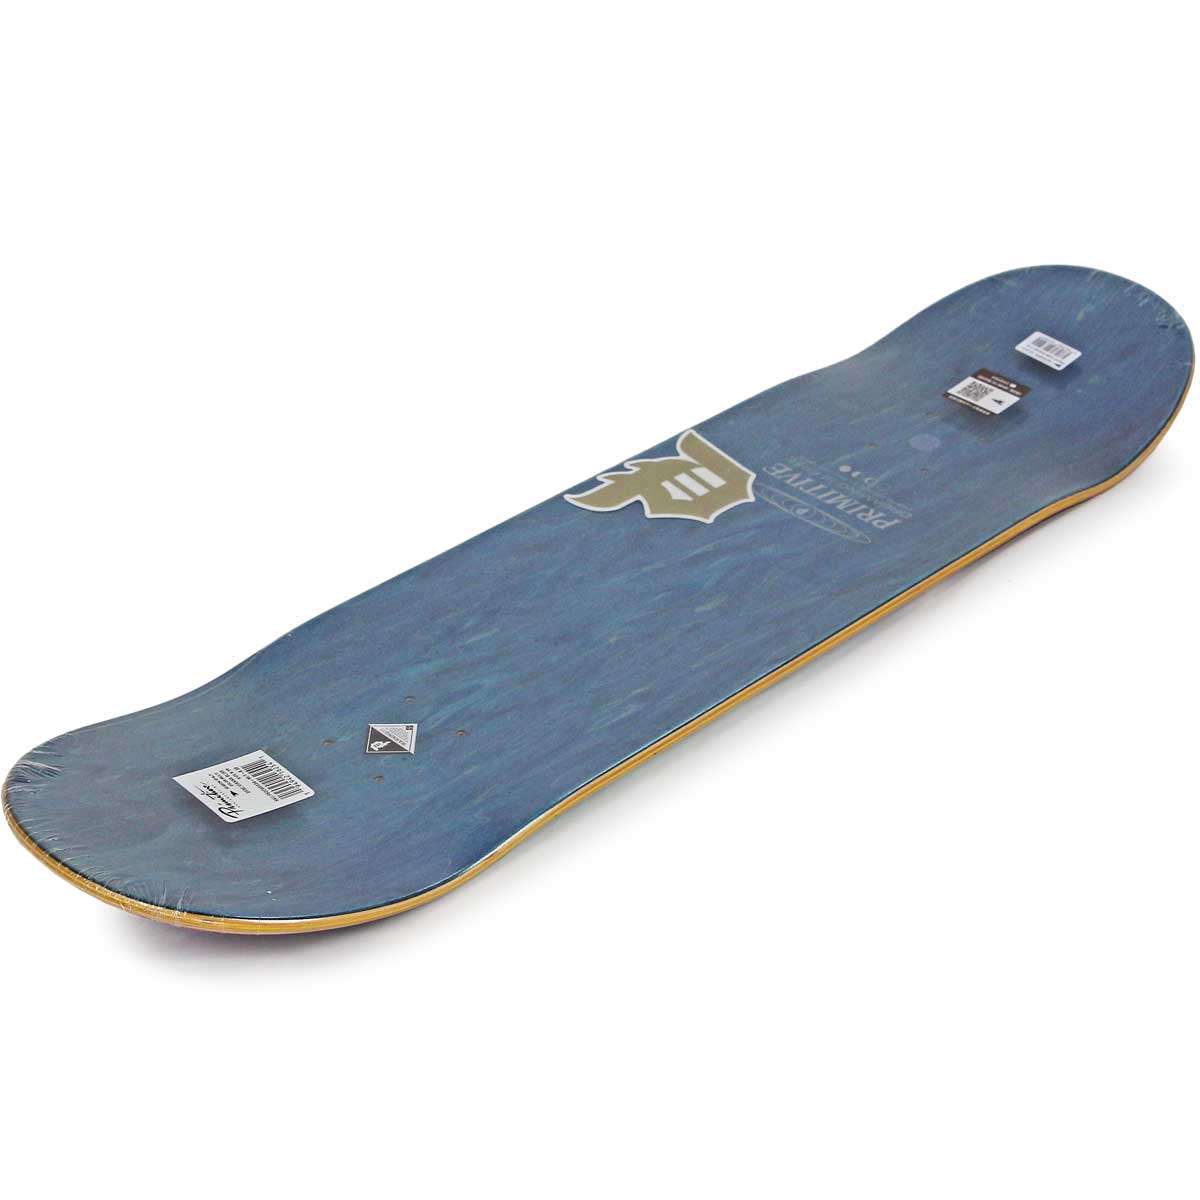 プリミティブ 8.38インチ スケボー デッキ Primitive Skateboards Pro 